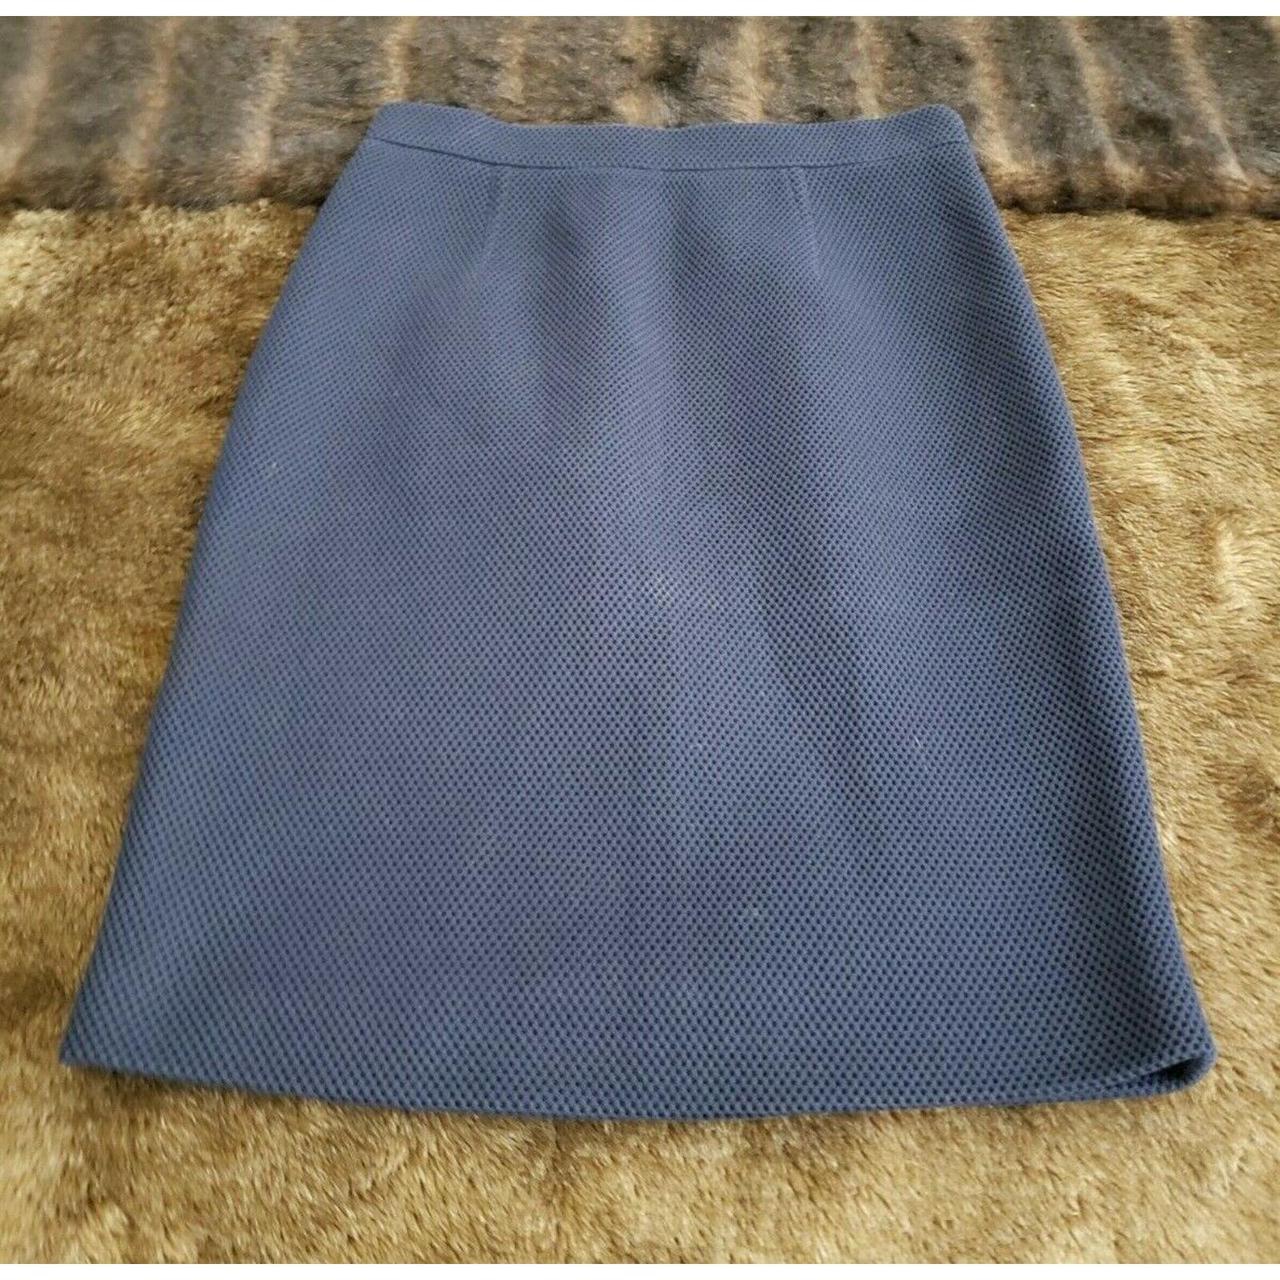 Carolina Herrera Women's Blue and Navy Skirt